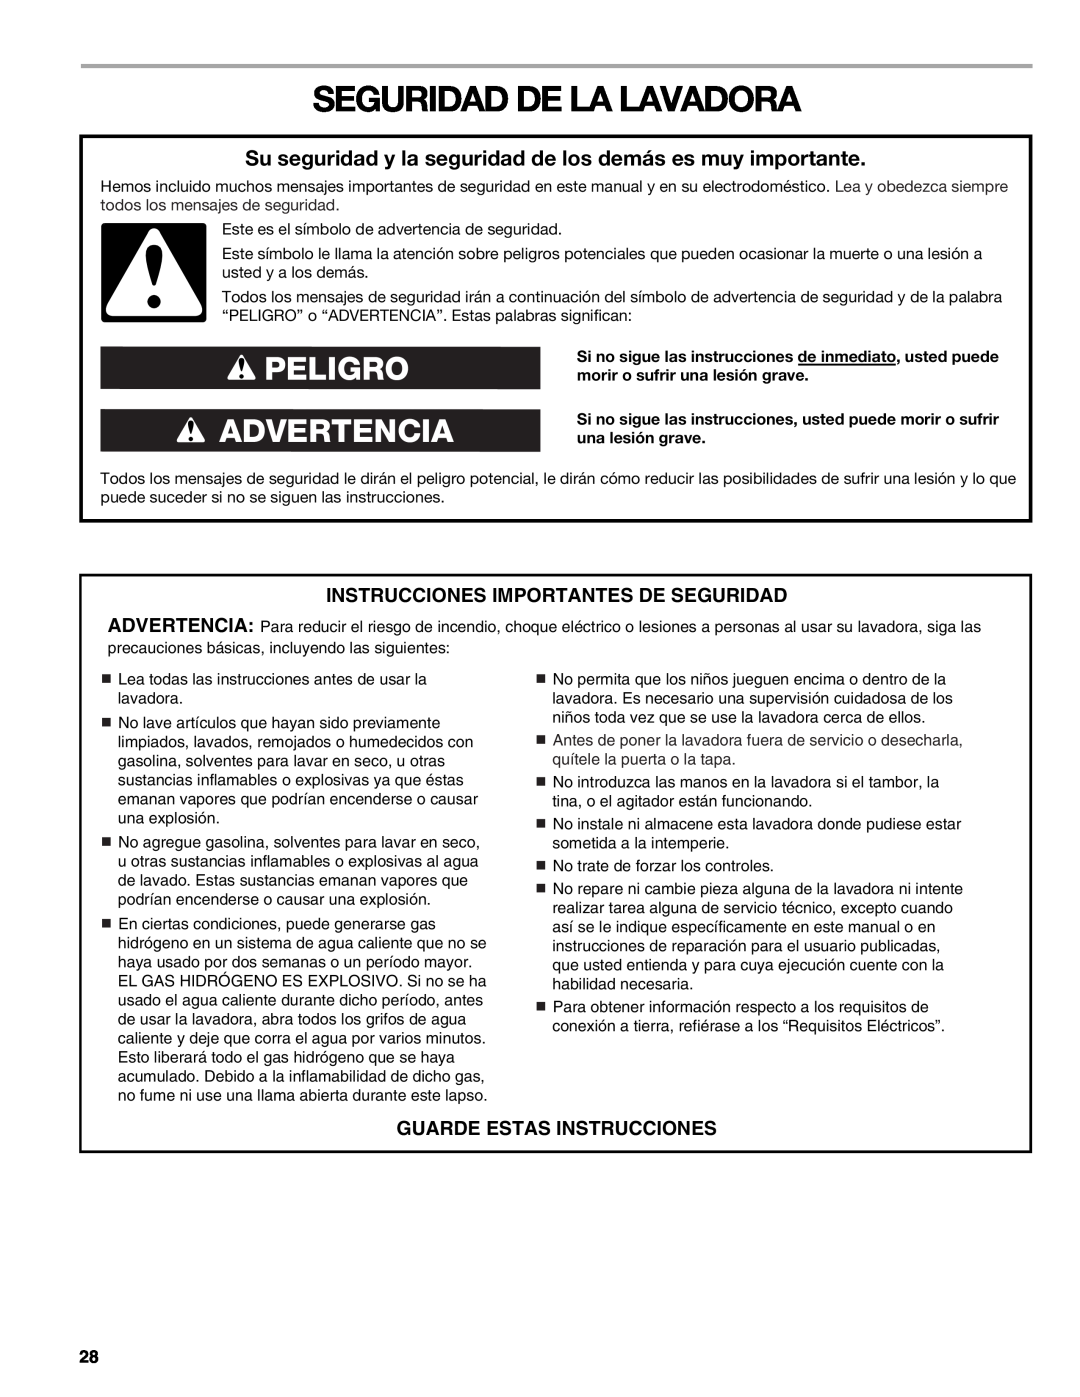 Kenmore W10133487A manual Seguridad De La Lavadora, Instrucciones Importantes De Seguridad, Guarde Estas Instrucciones 